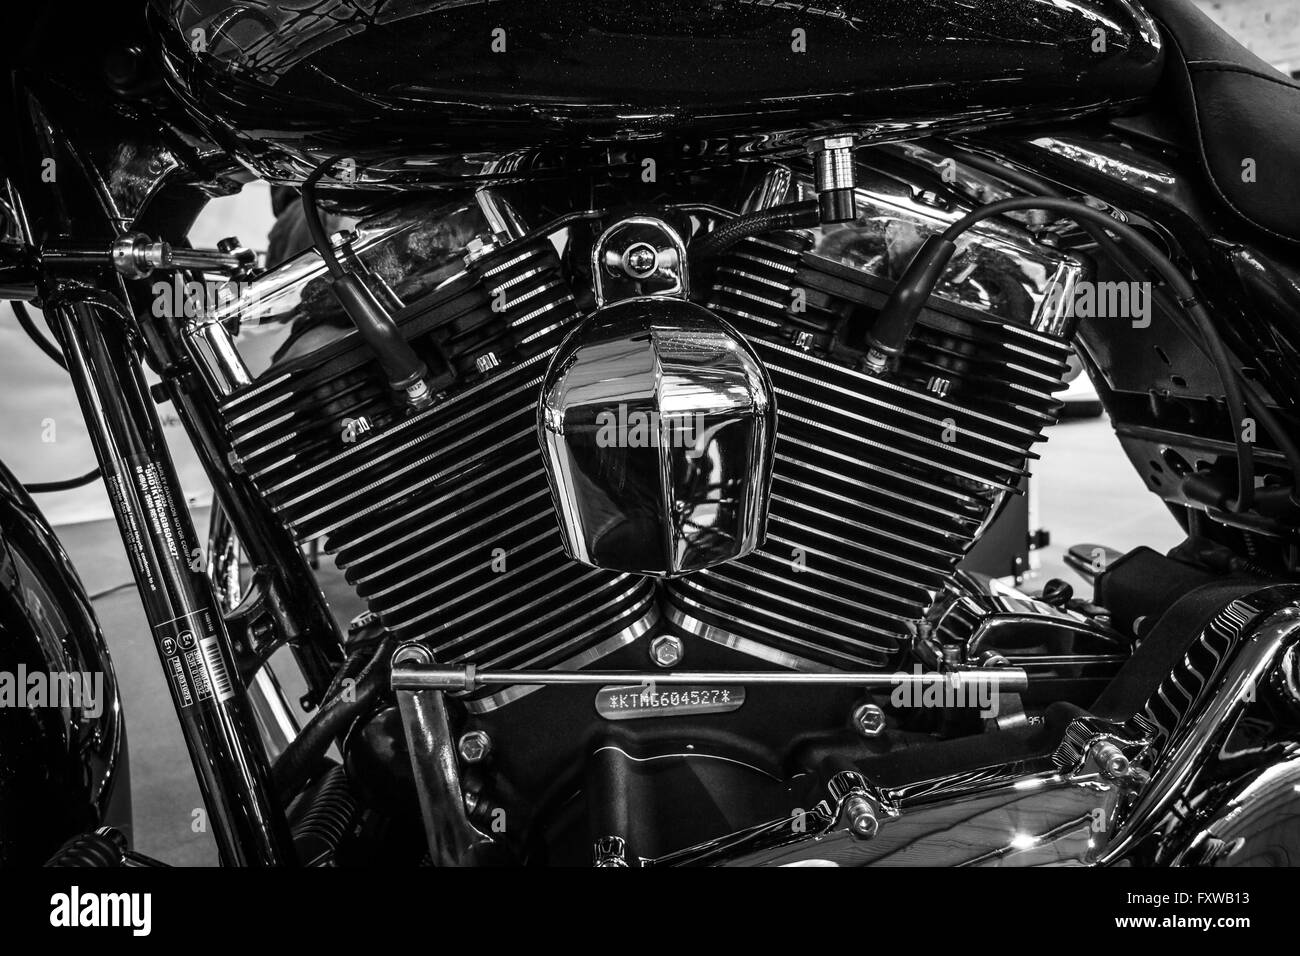 Fragmento de una motocicleta Harley-Davidson Road Glide, 2016 Foto de stock